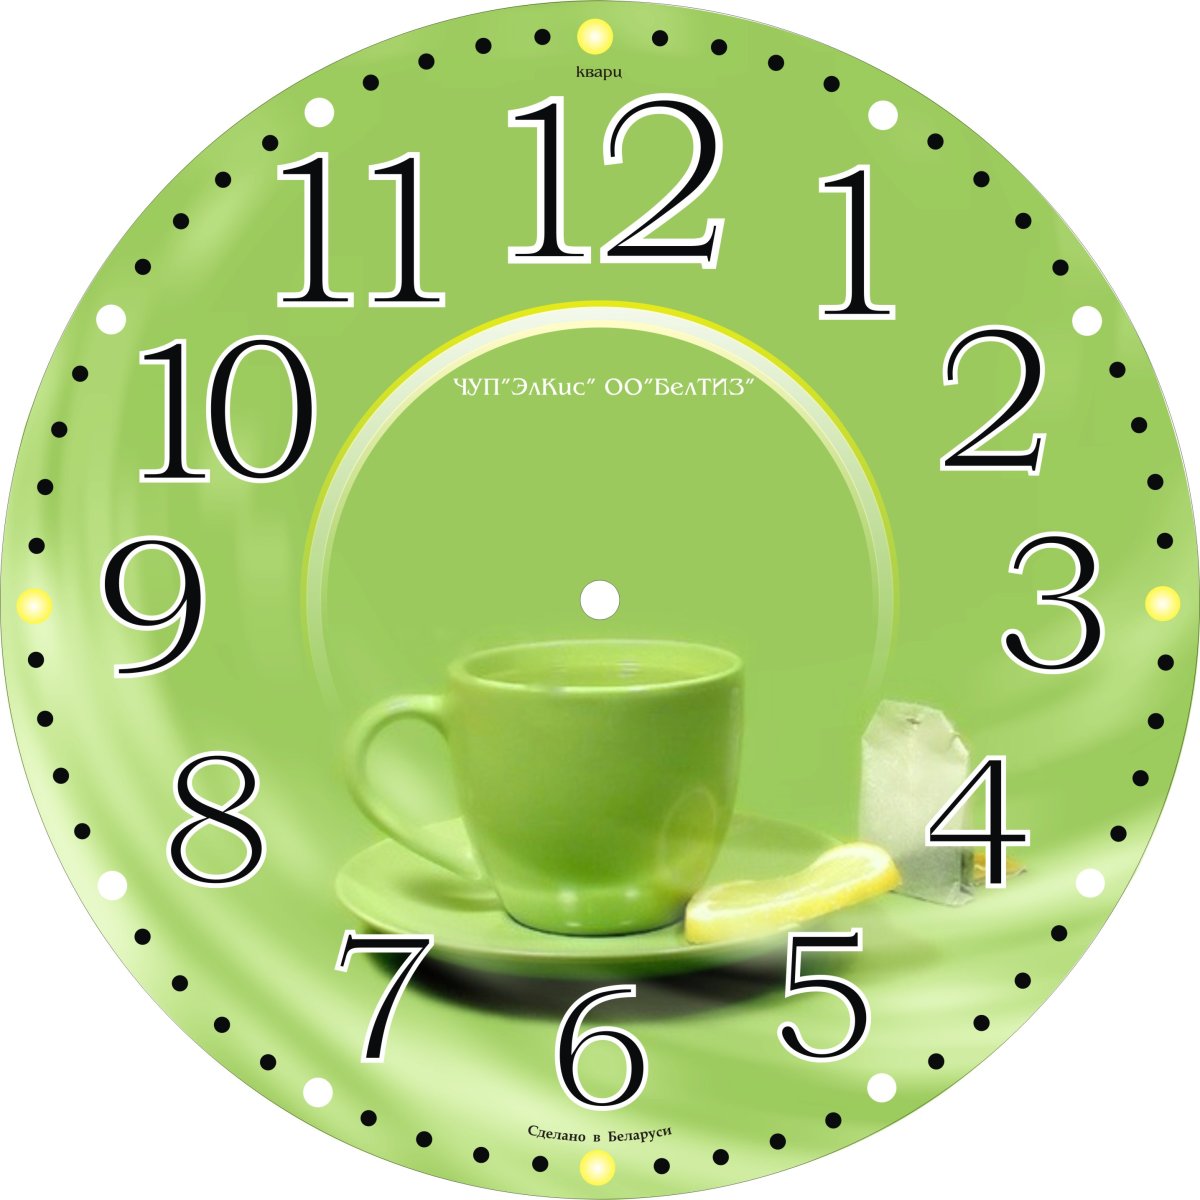 Настенные часы с минутами. Циферблат часов для кухни. Часы циферблат кухонные без стрелок. Циферблат для настенных часов. Настенные часы с зеленым циферблатом.